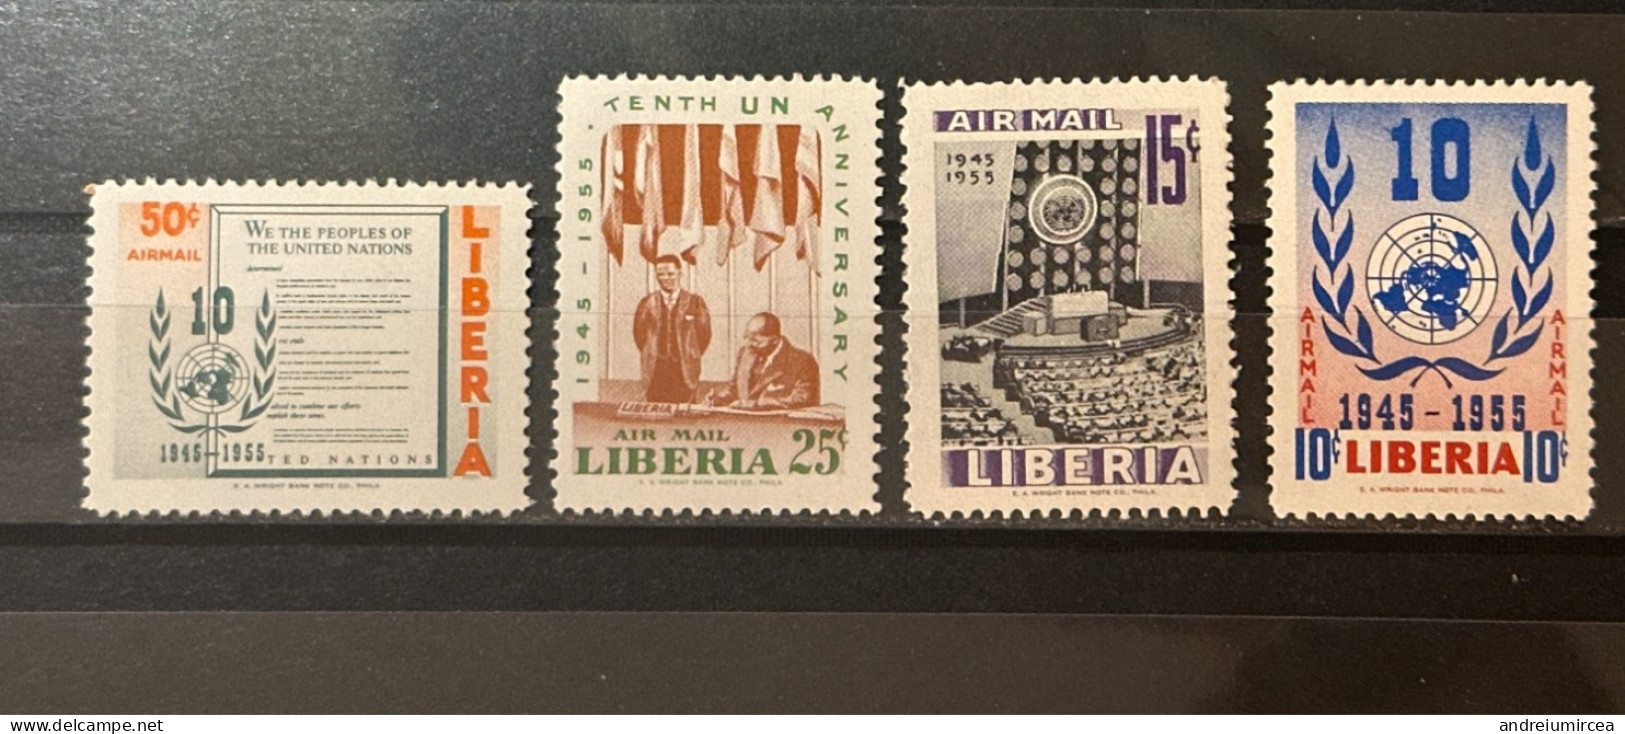 Liberia MNH 1955 UN Anniversary - Liberia